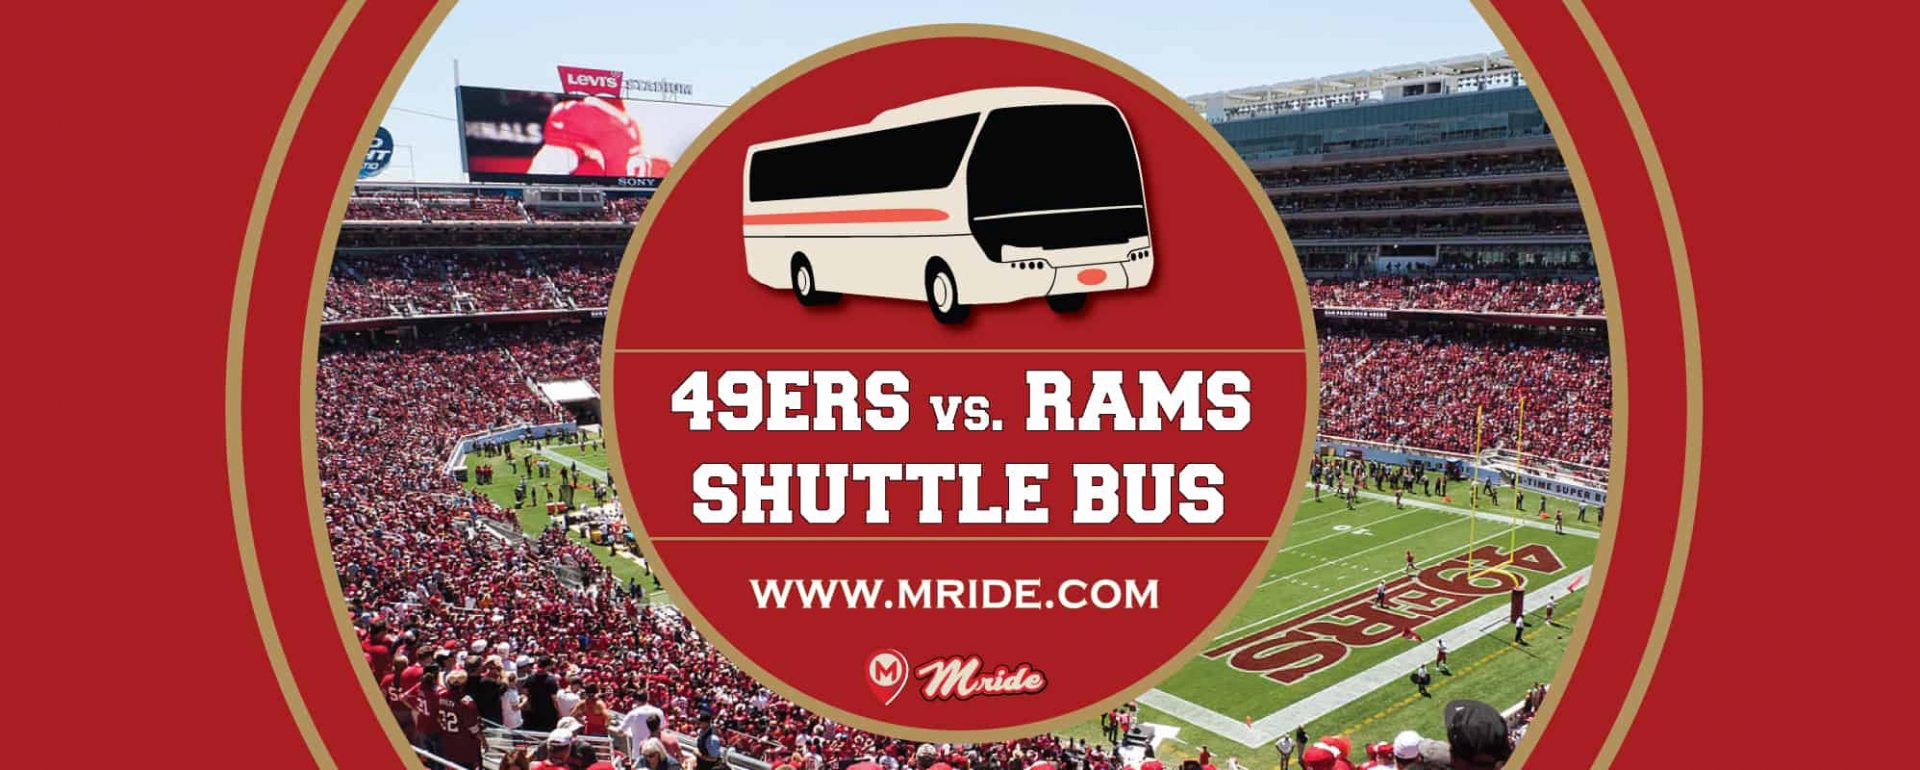 49ers vs. Rams Shuttle Bus